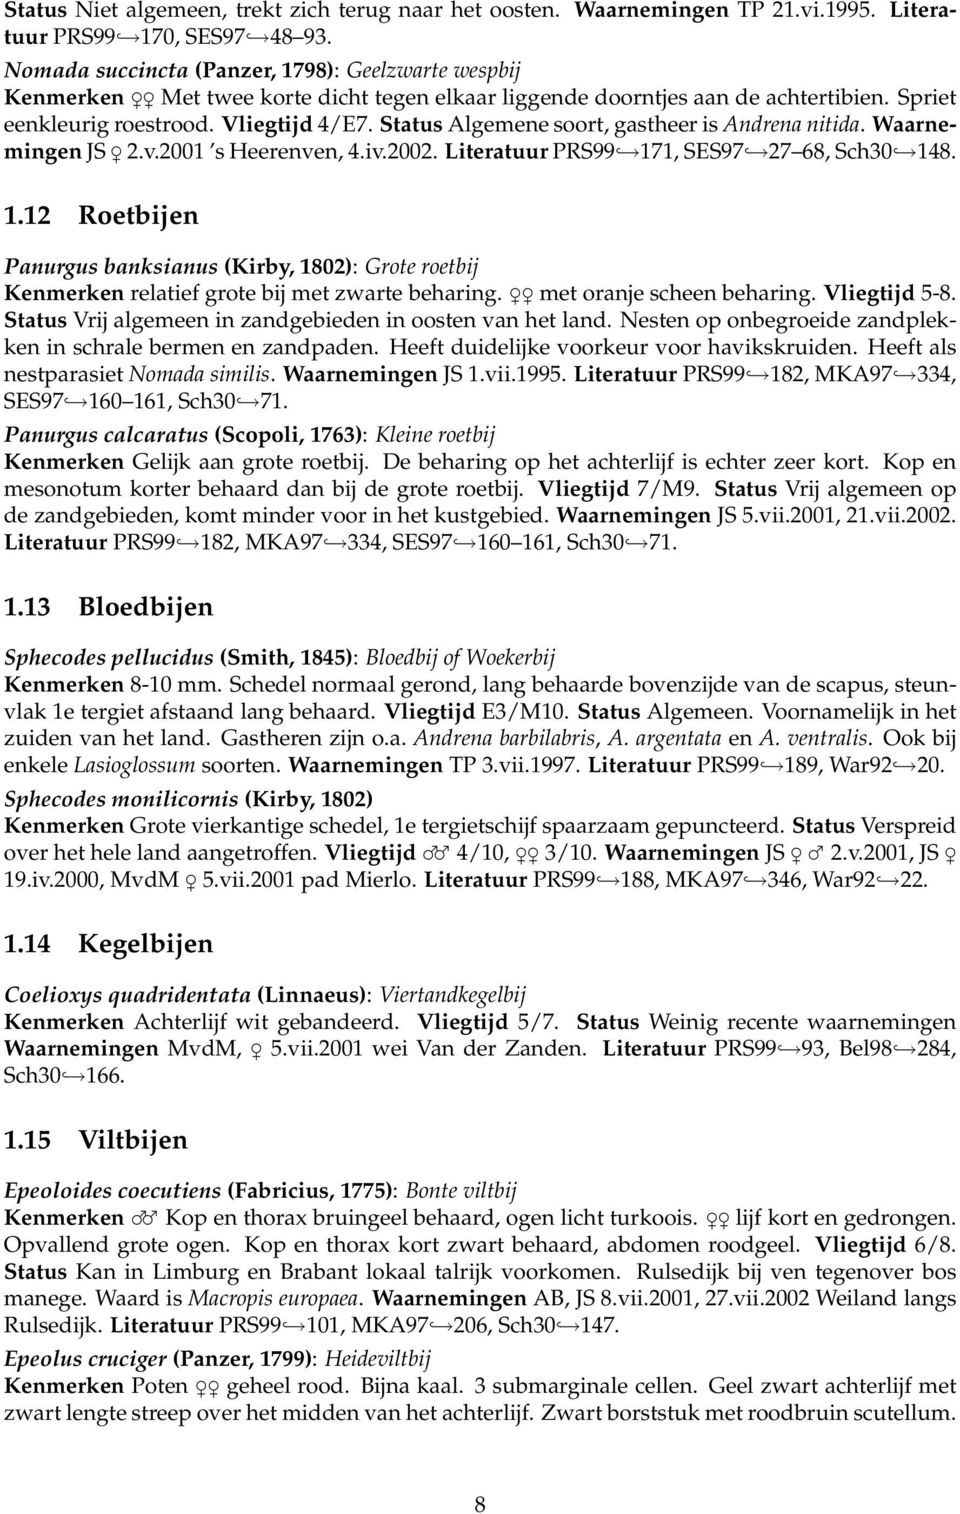 Status Algemene soort, gastheer is Andrena nitida. Waarnemingen JS 2.v.2001 s Heerenven, 4.iv.2002. Literatuur PRS99 17